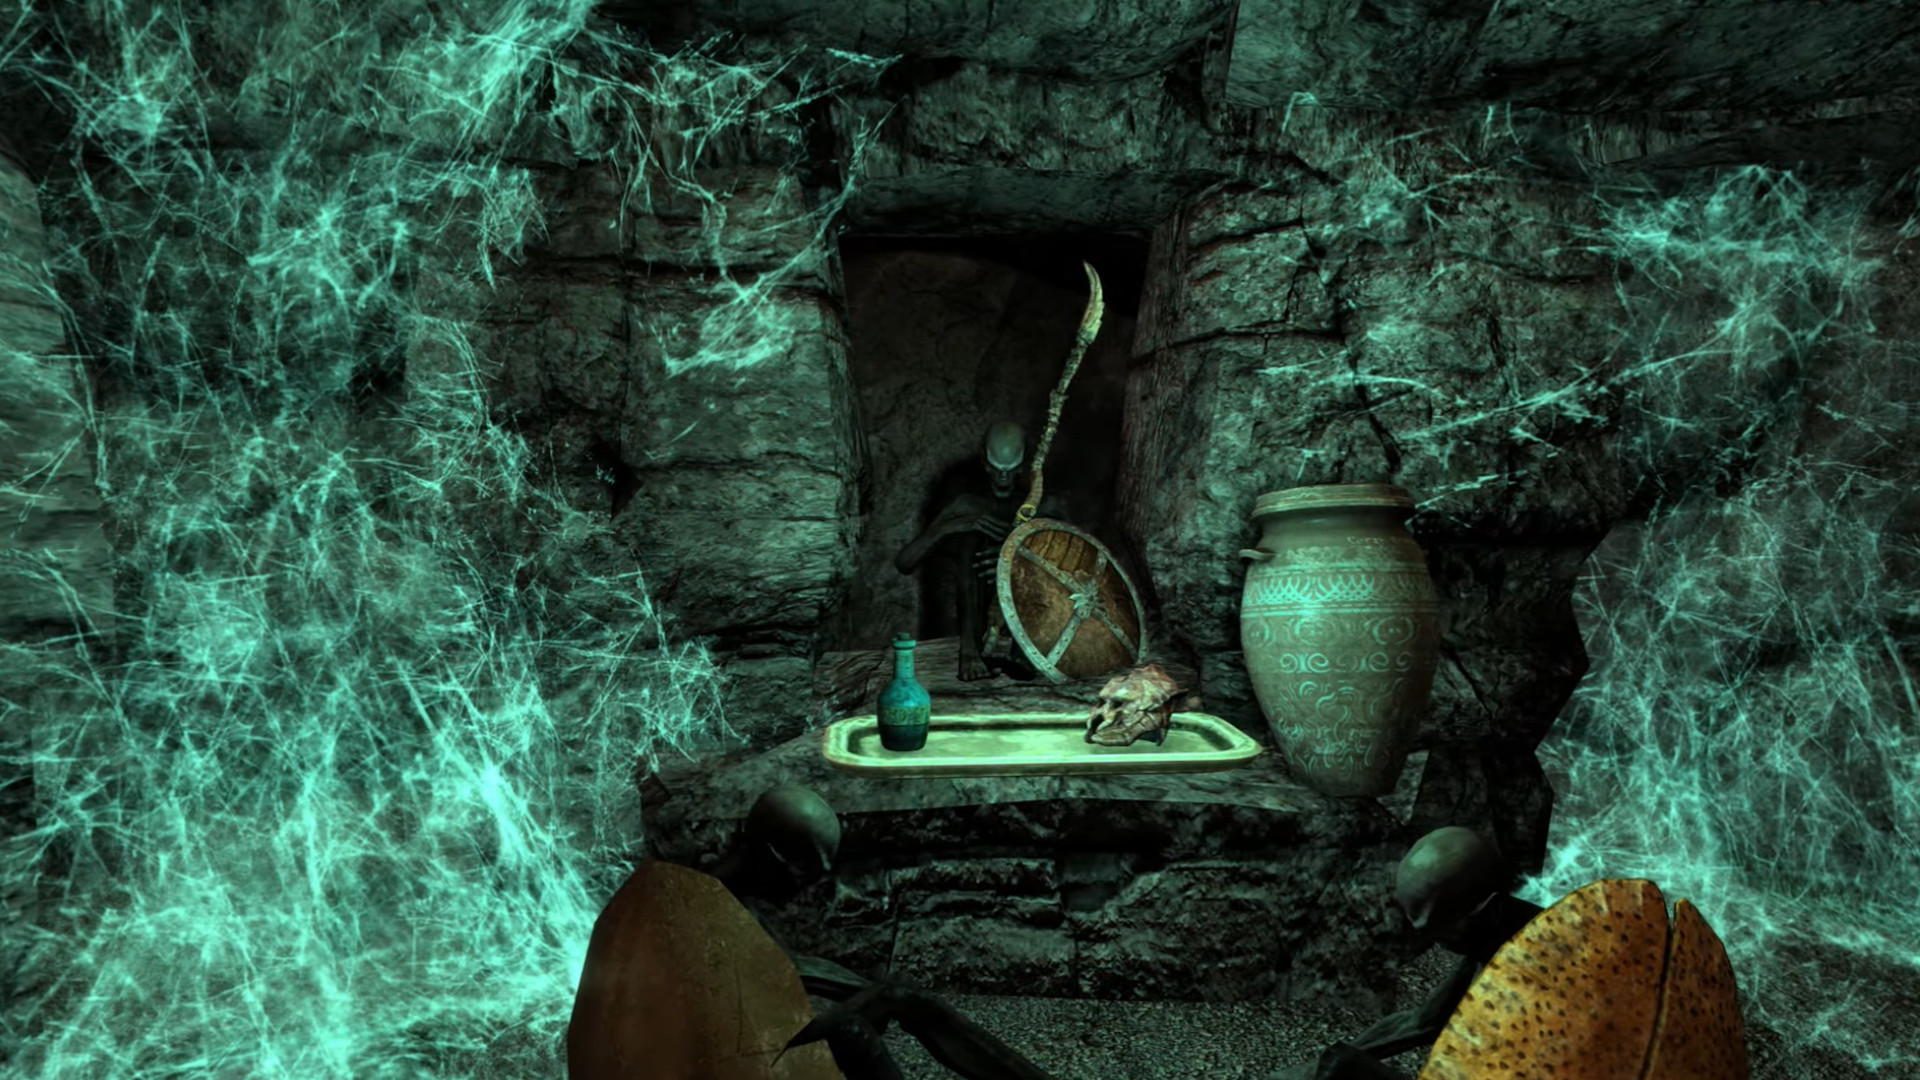 Skyrim-mei-Morrowind mod Skywind sjocht der noch ongelooflijk út, en klinkt noch in lange wei